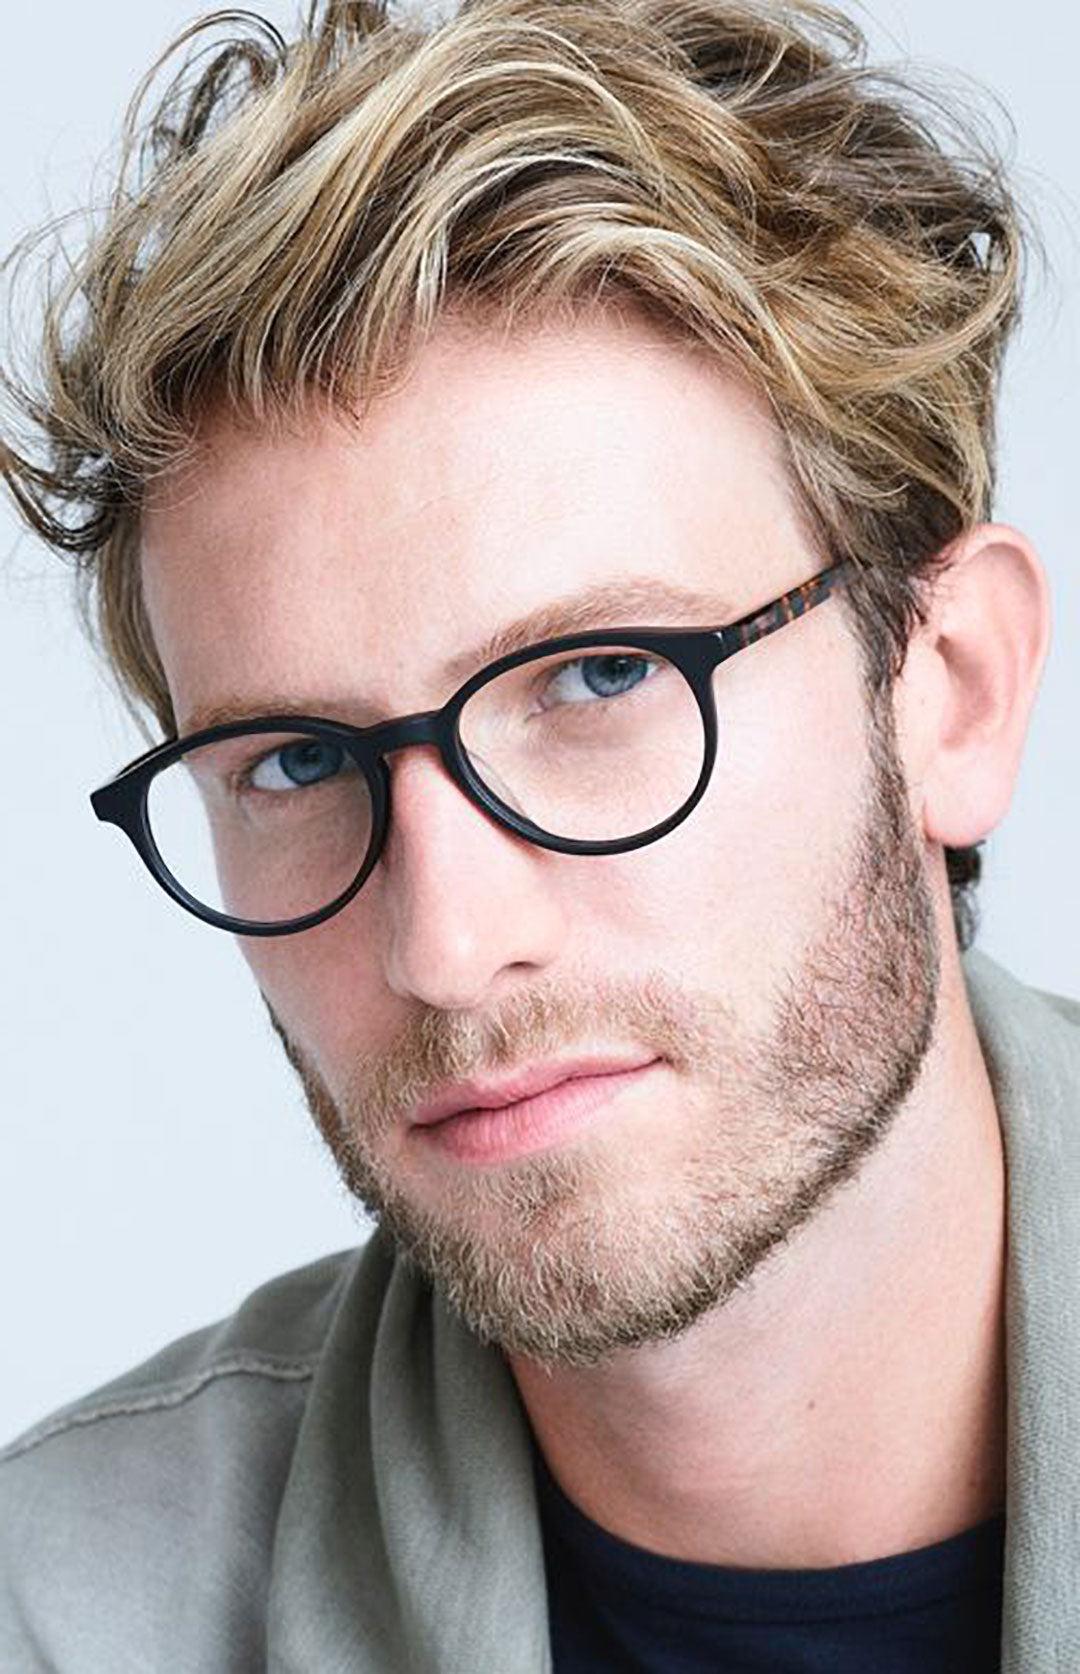 Man with dyed blonde hair looking through black circle eyeglasses